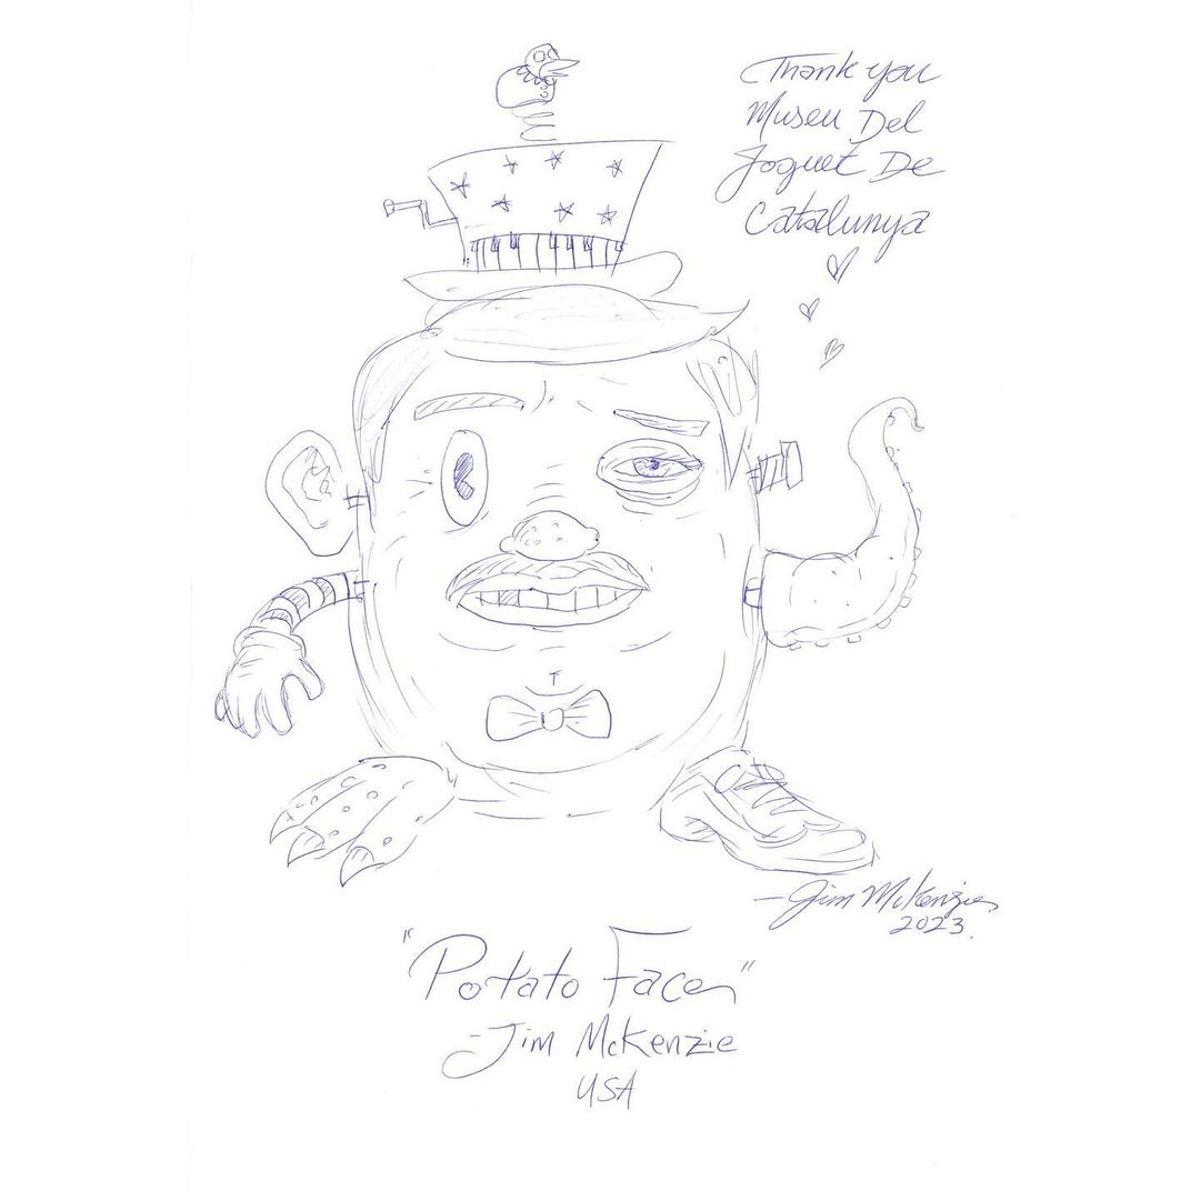 El dibuix fet per Jim McKenzie amb el seu Potato Face al llibre de visites del Museu.